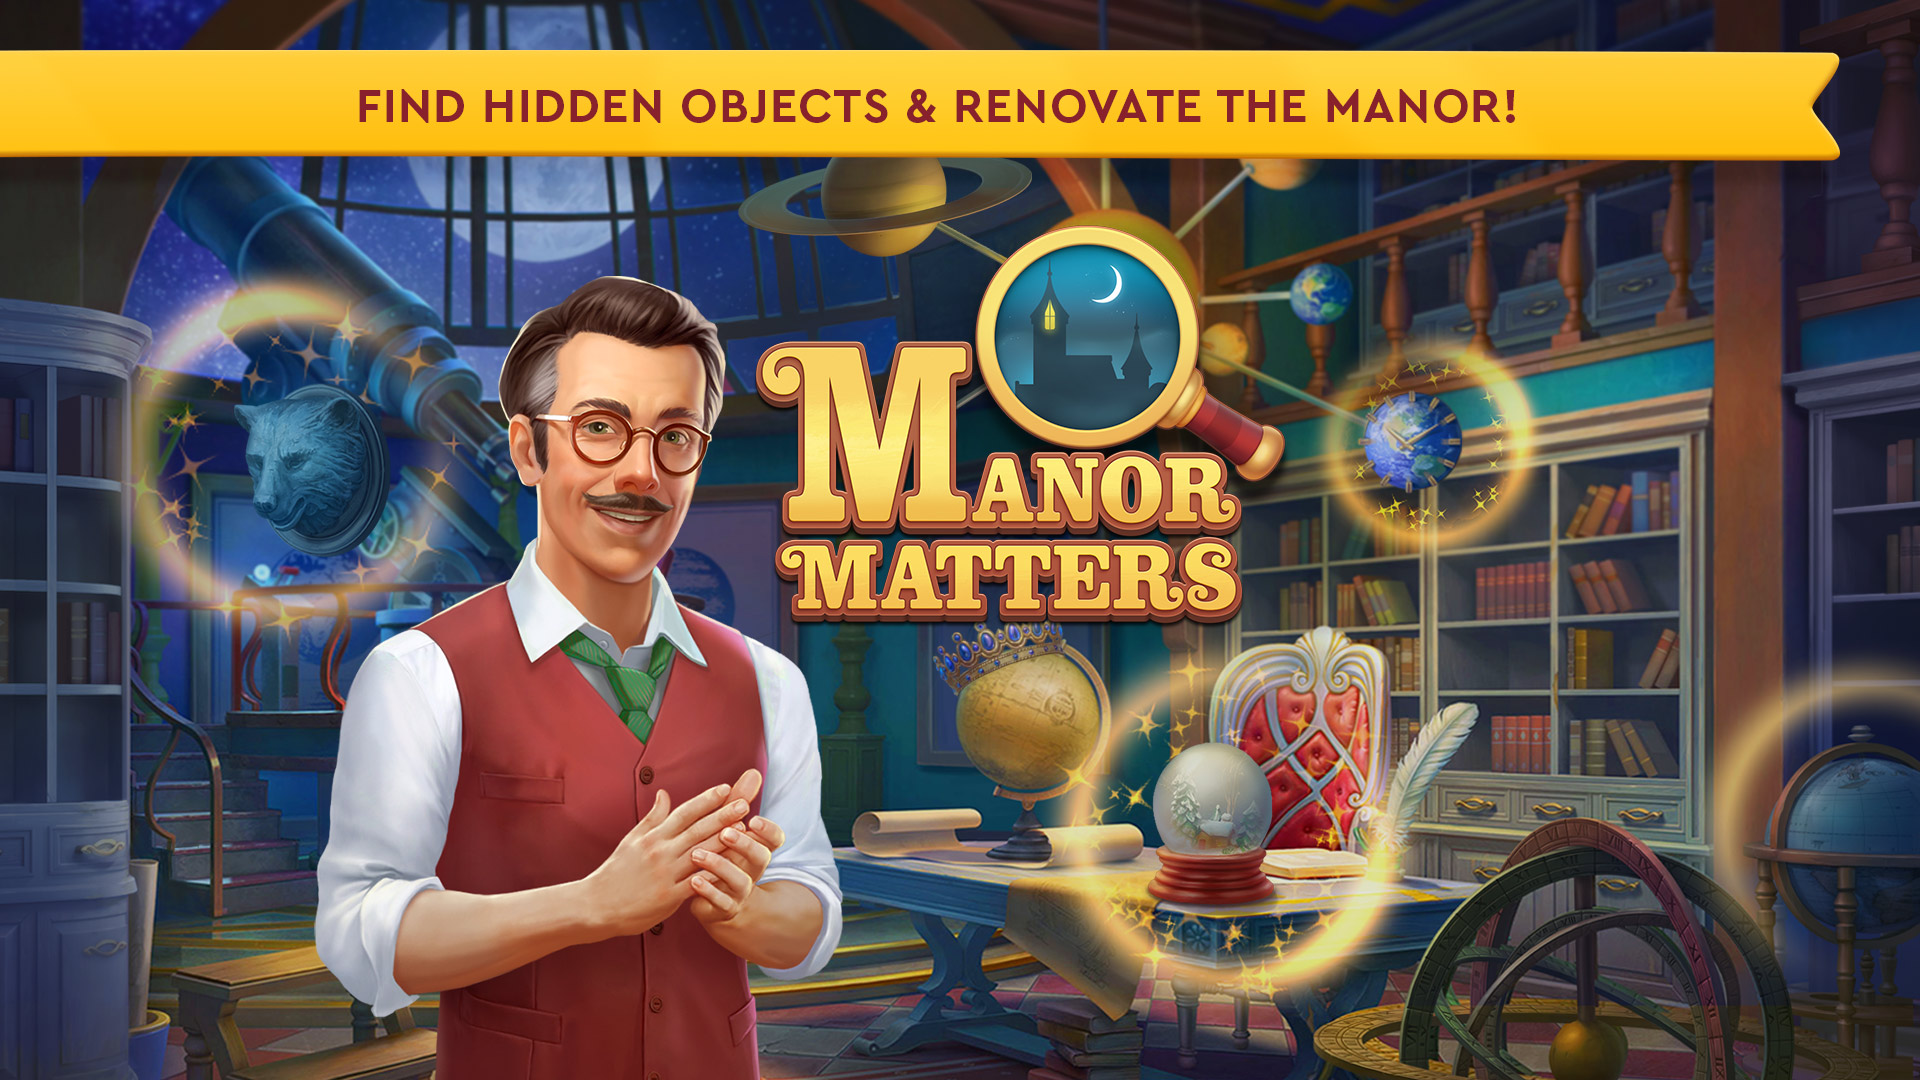 manor matters match-3